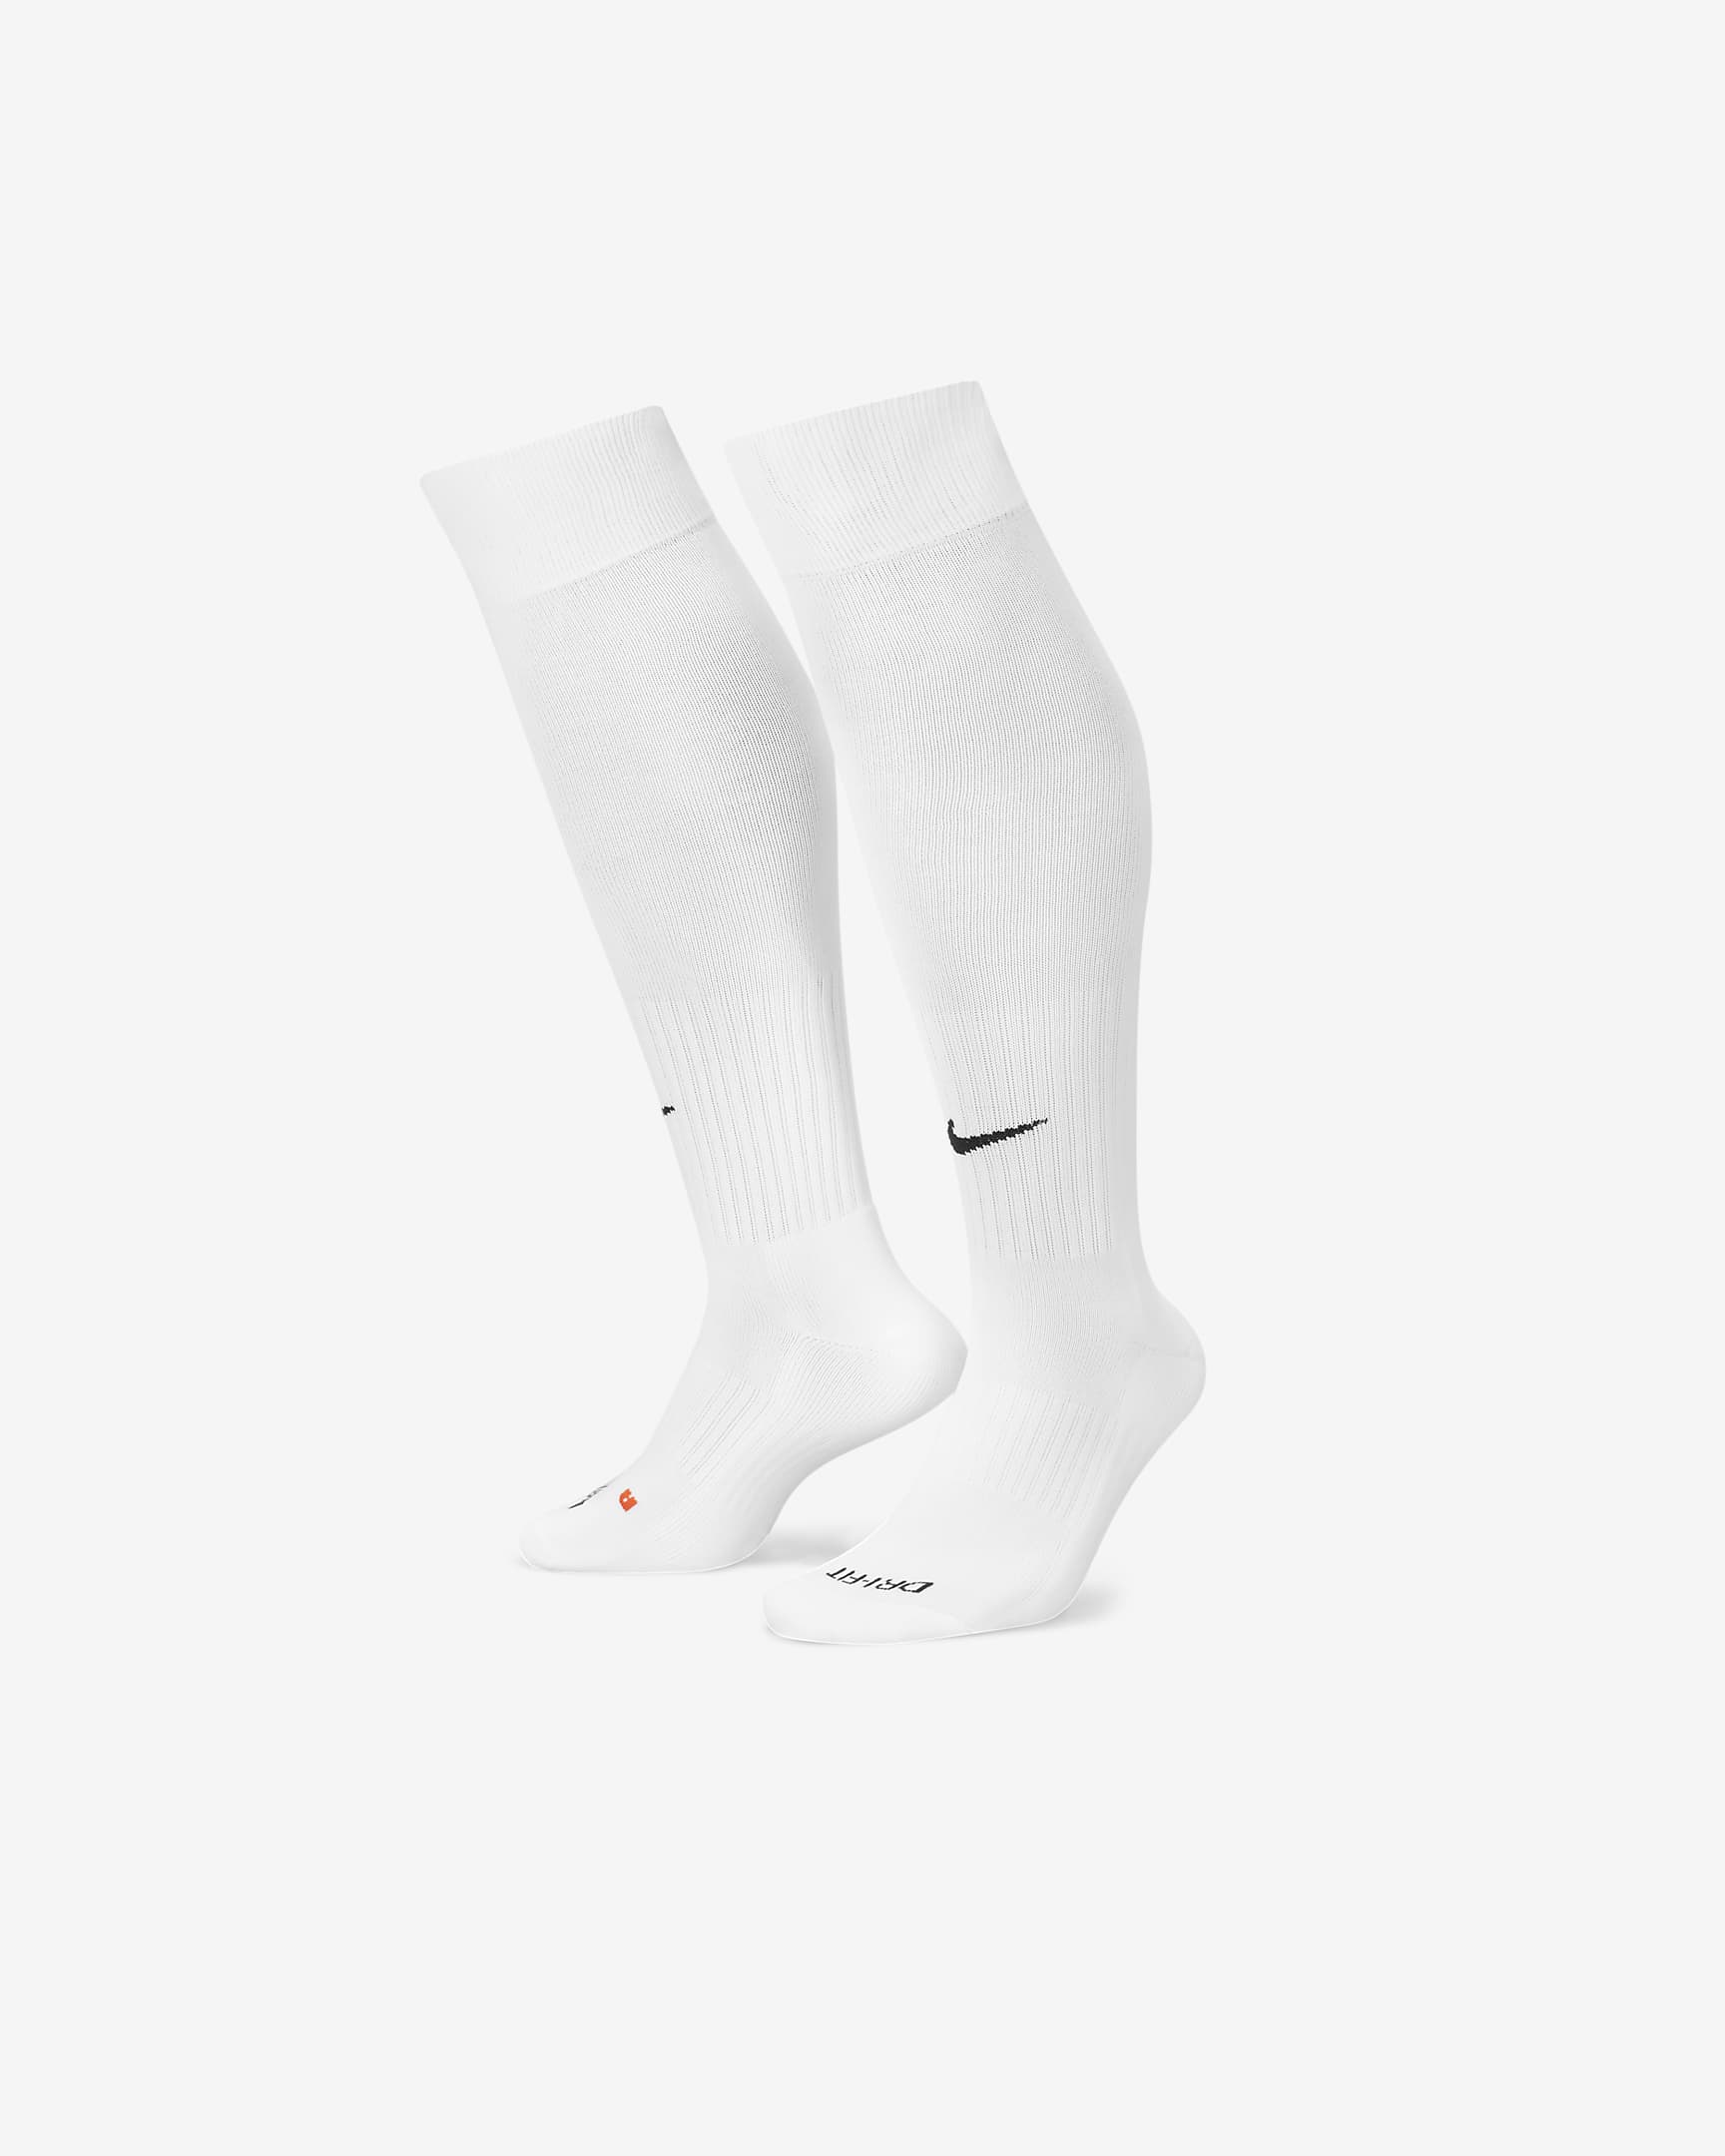 Nike Classic 2 Cushioned Over-the-Calf Socks. Nike UK